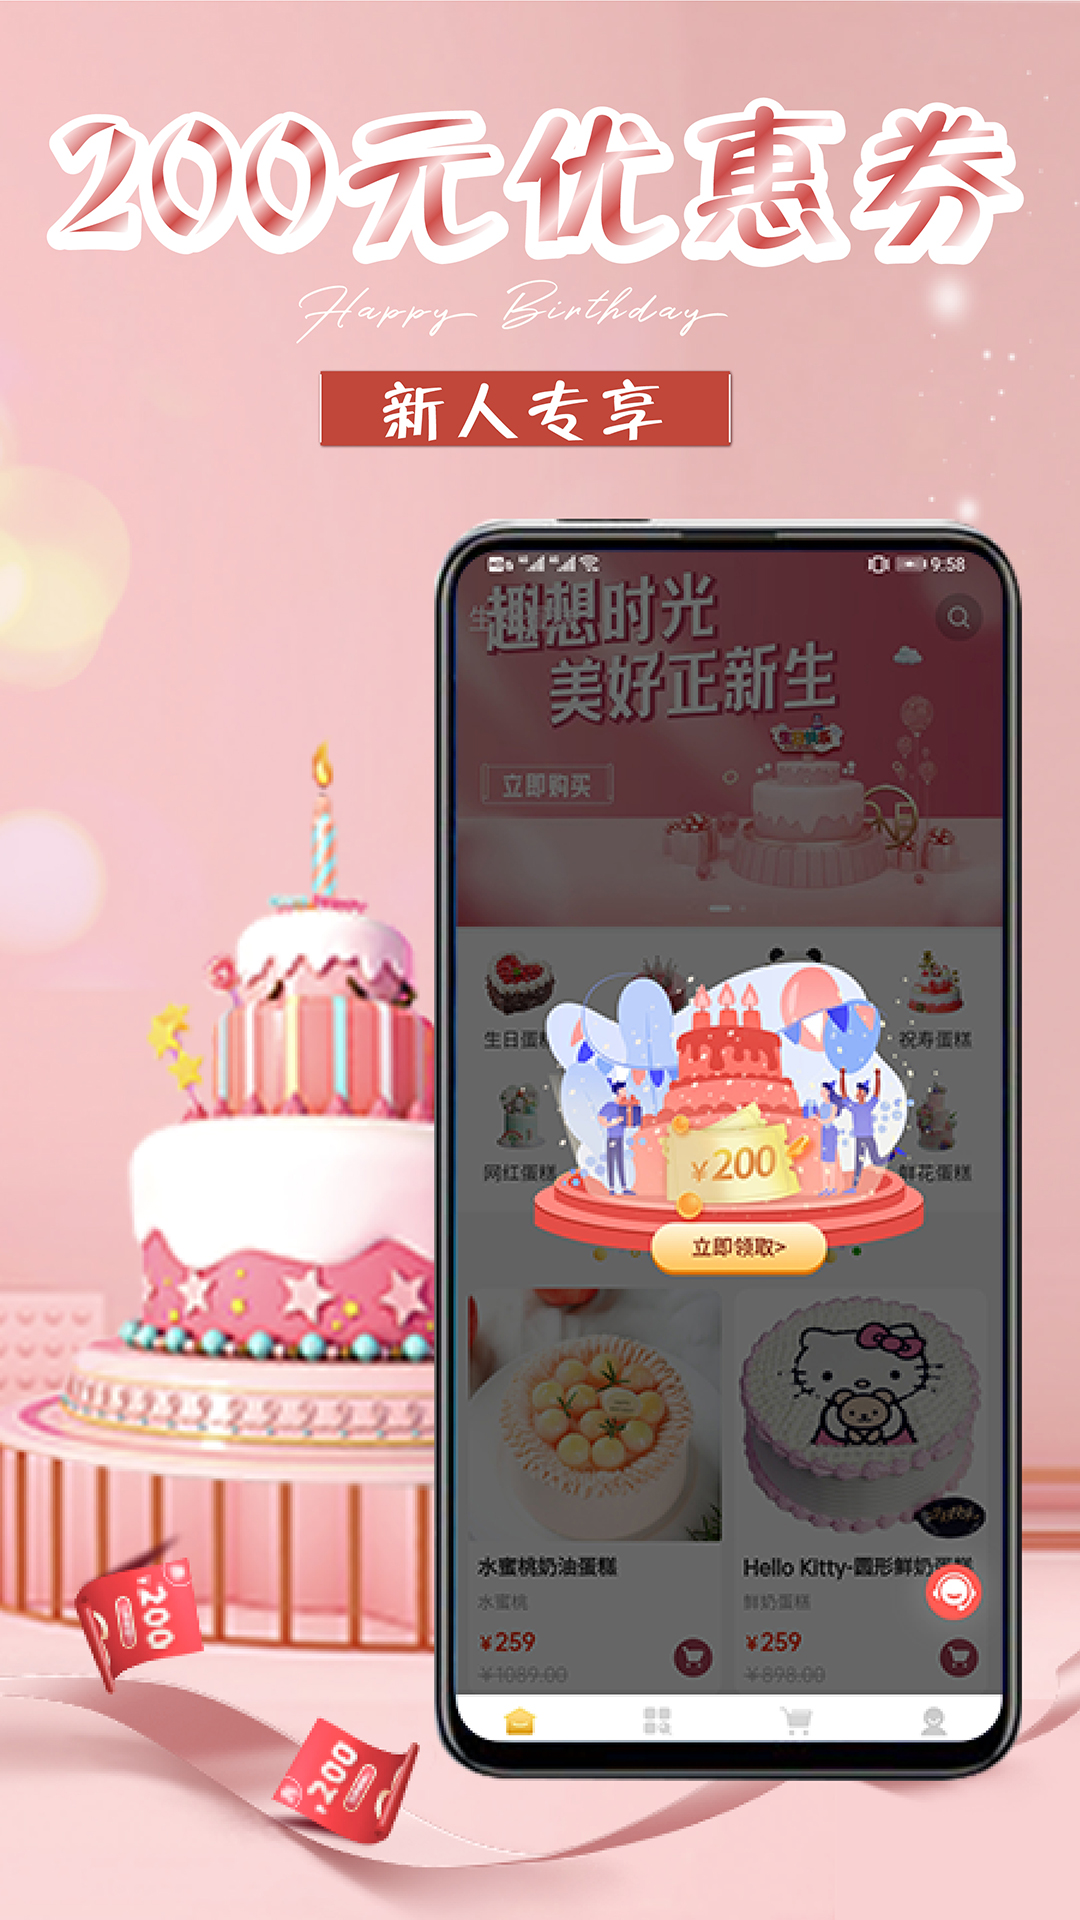 网红生日蛋糕店app1.5.1